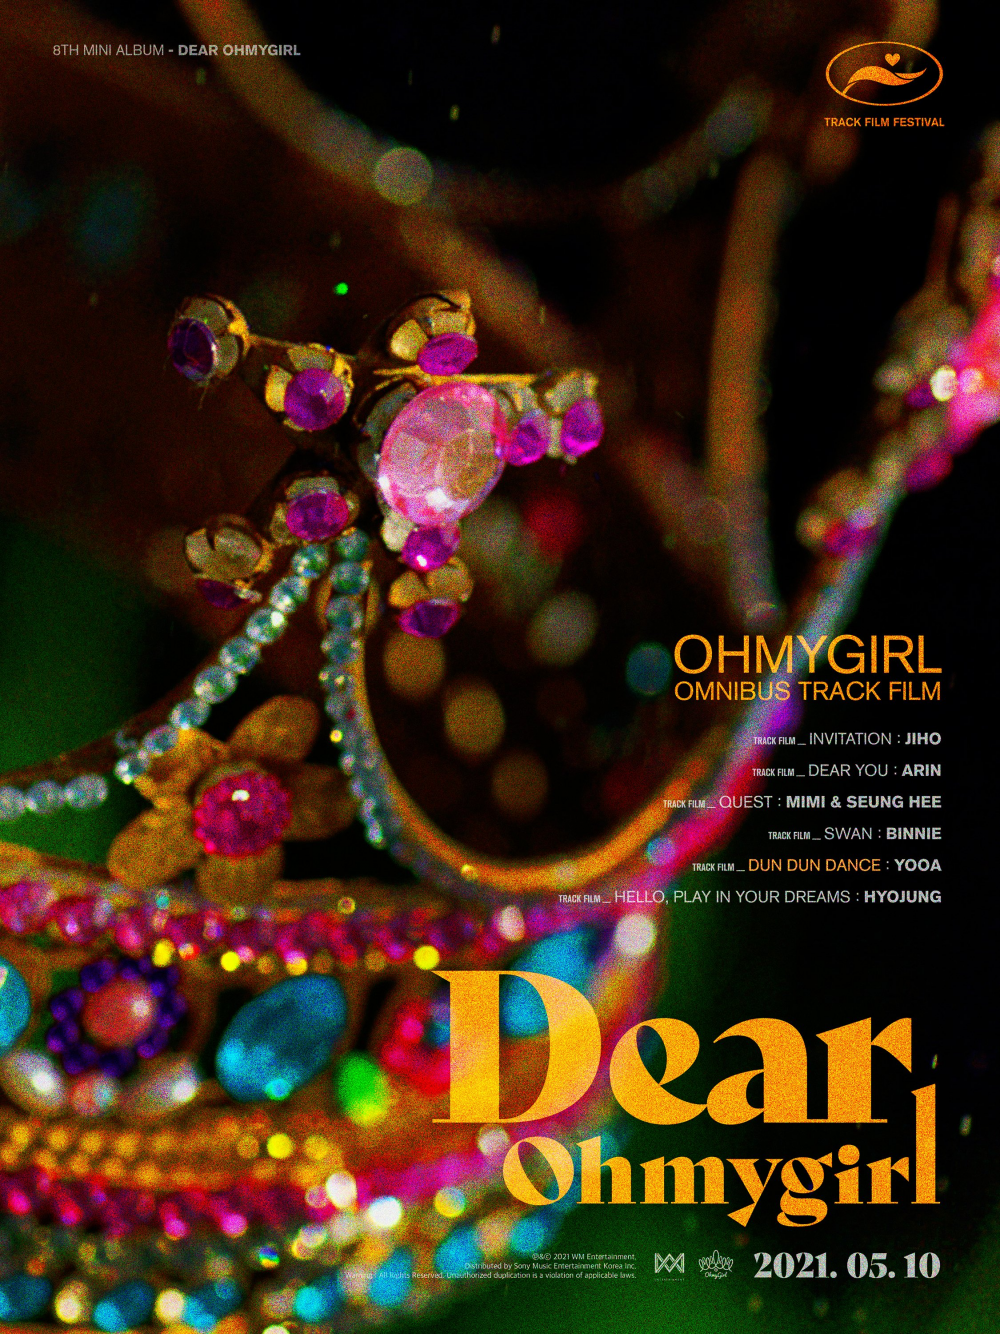 [Камбэк] Oh My Girl альбом "Dear OHMYGIRL": музыкальный клип "Dun Dun Dance"